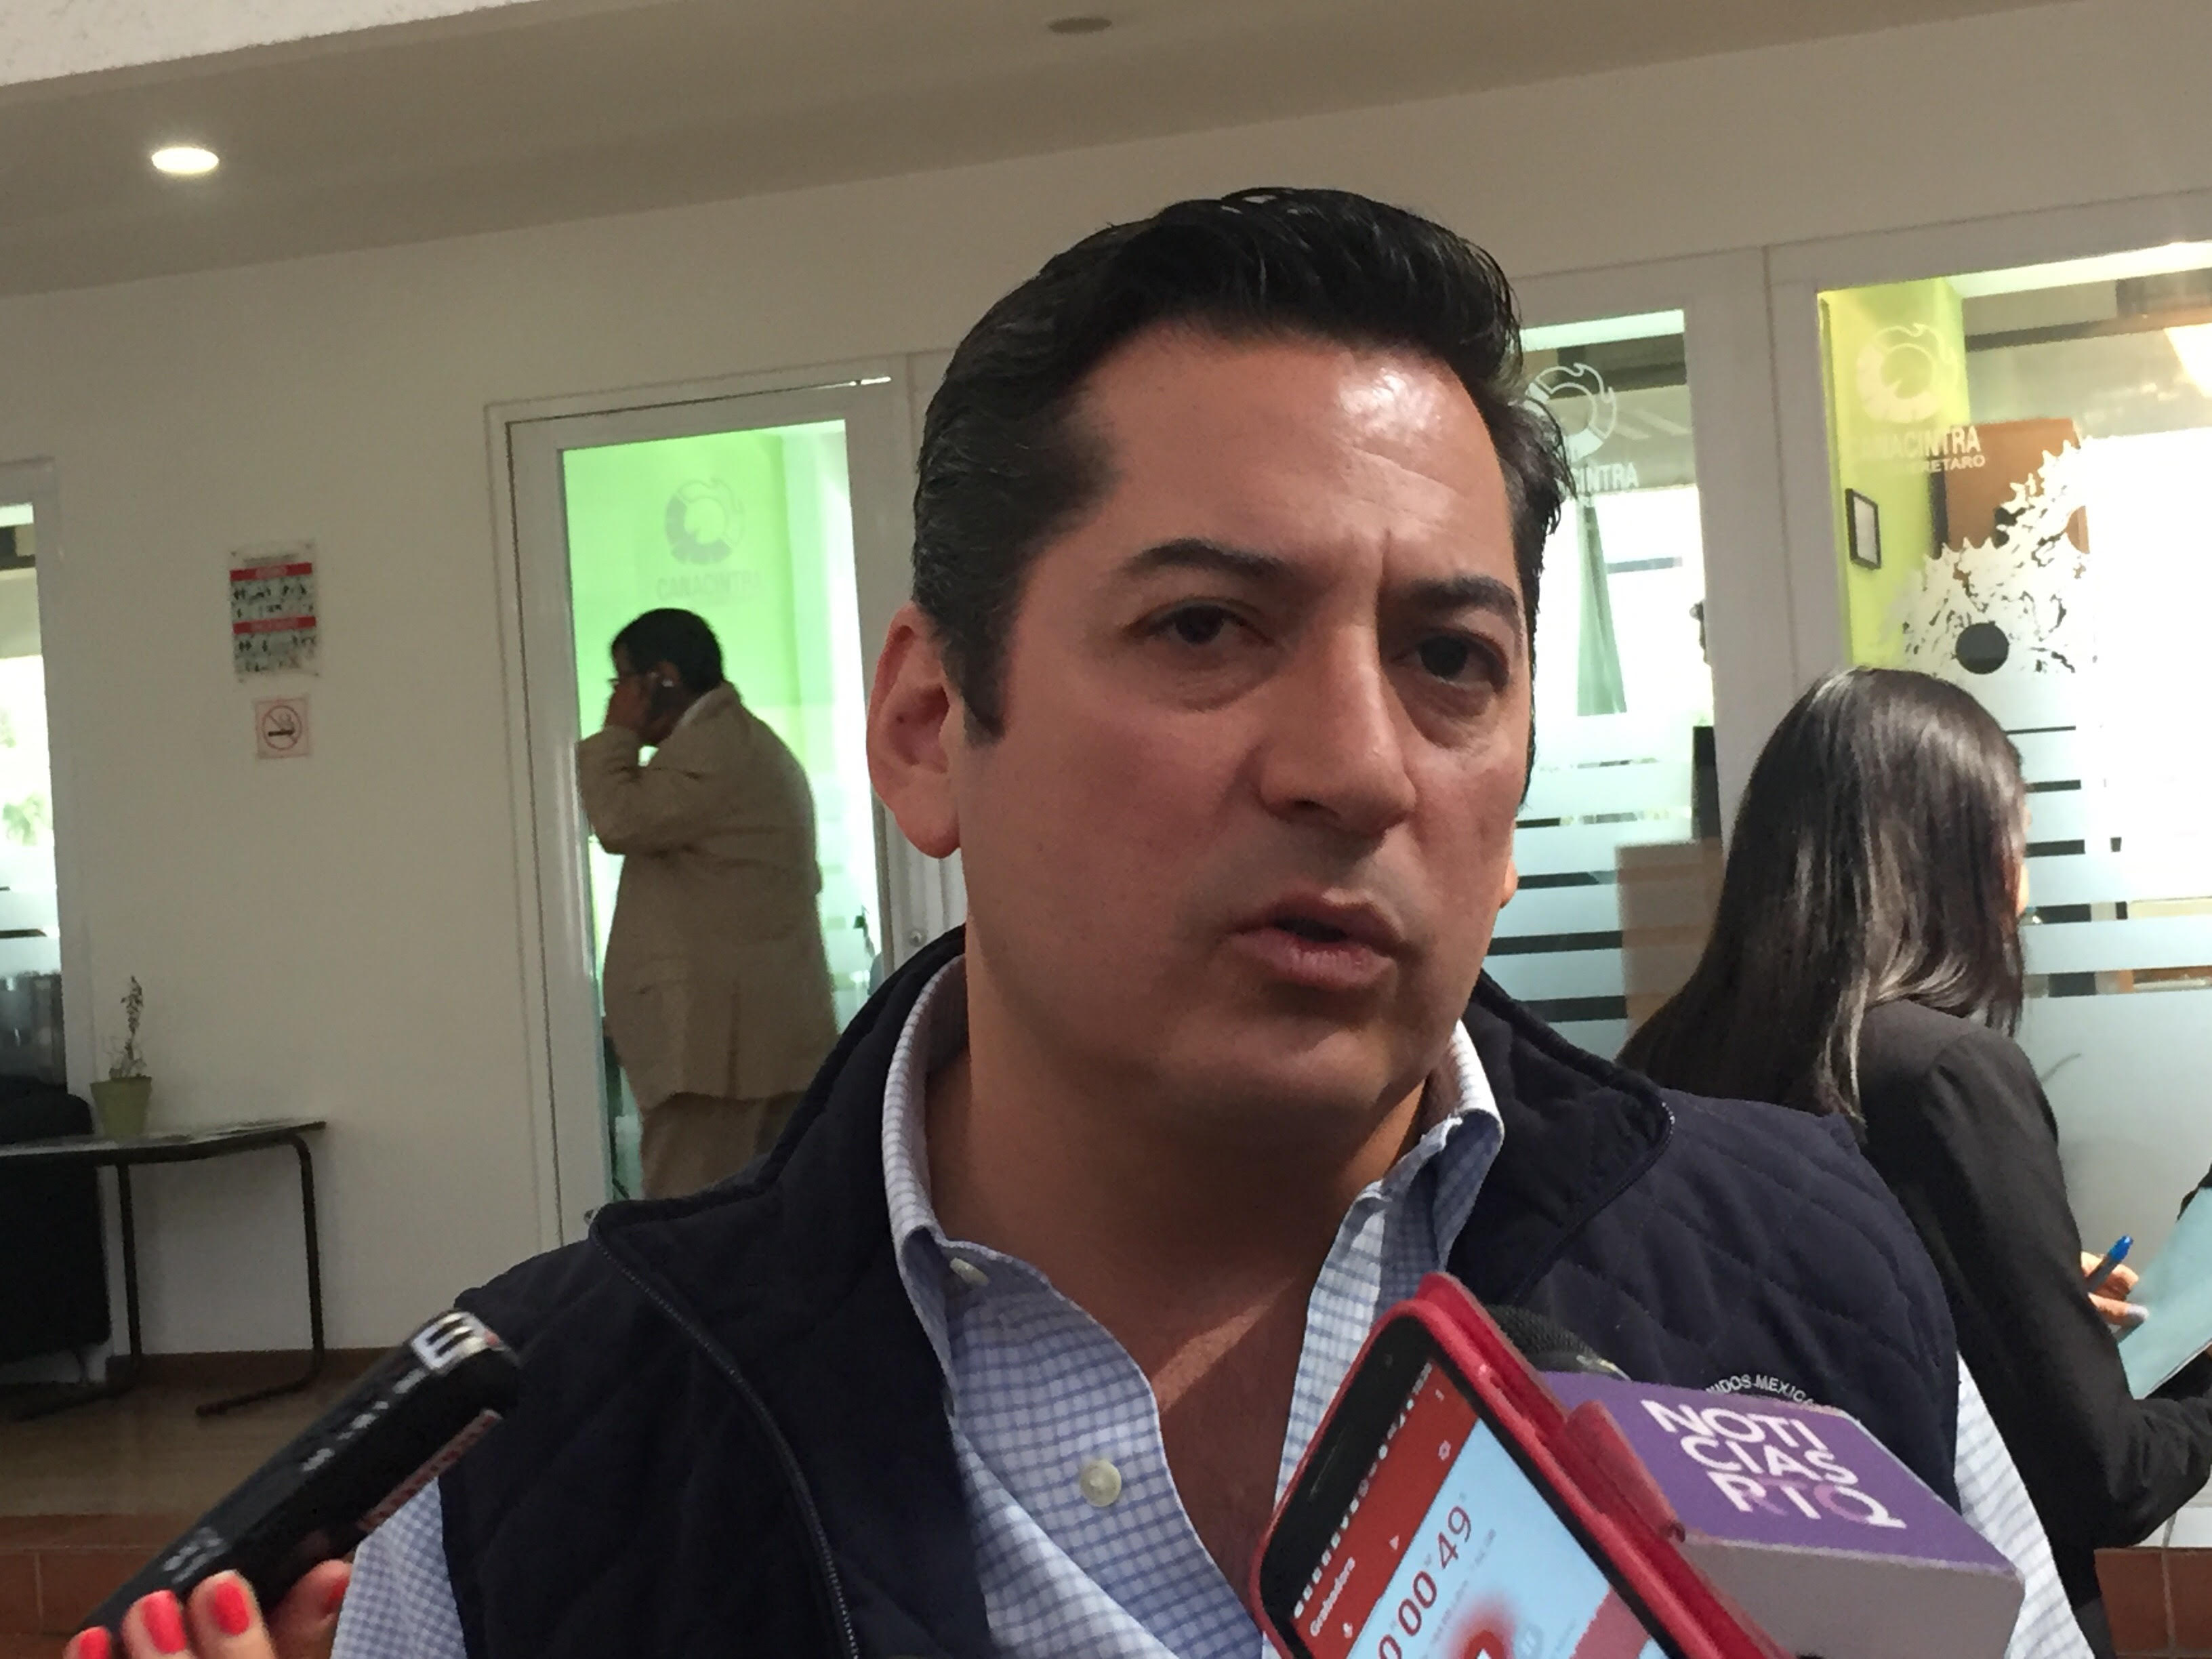  Solo 10% de las empresas en Querétaro no han cumplido con el reporte de índices contaminantes: Semarnat